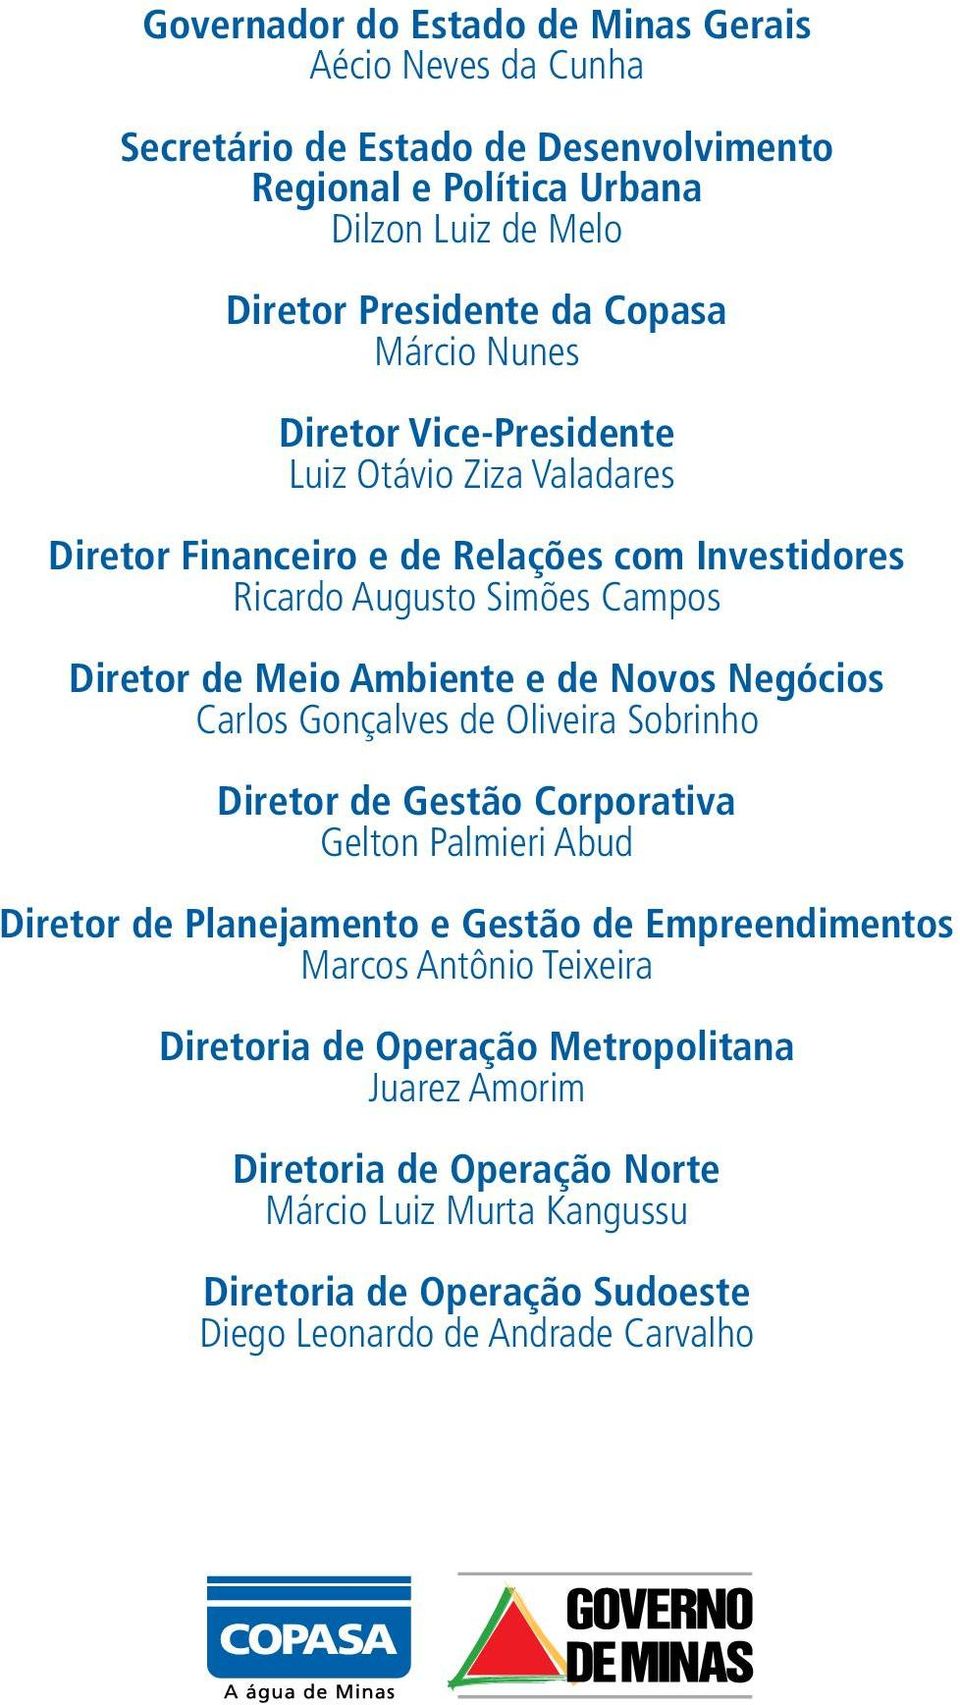 Novos Negócios Carlos Gonçalves de Oliveira Sobrinho Diretor de Gestão Corporativa Gelton Palmieri Abud Diretor de Planejamento e Gestão de Empreendimentos Marcos Antônio